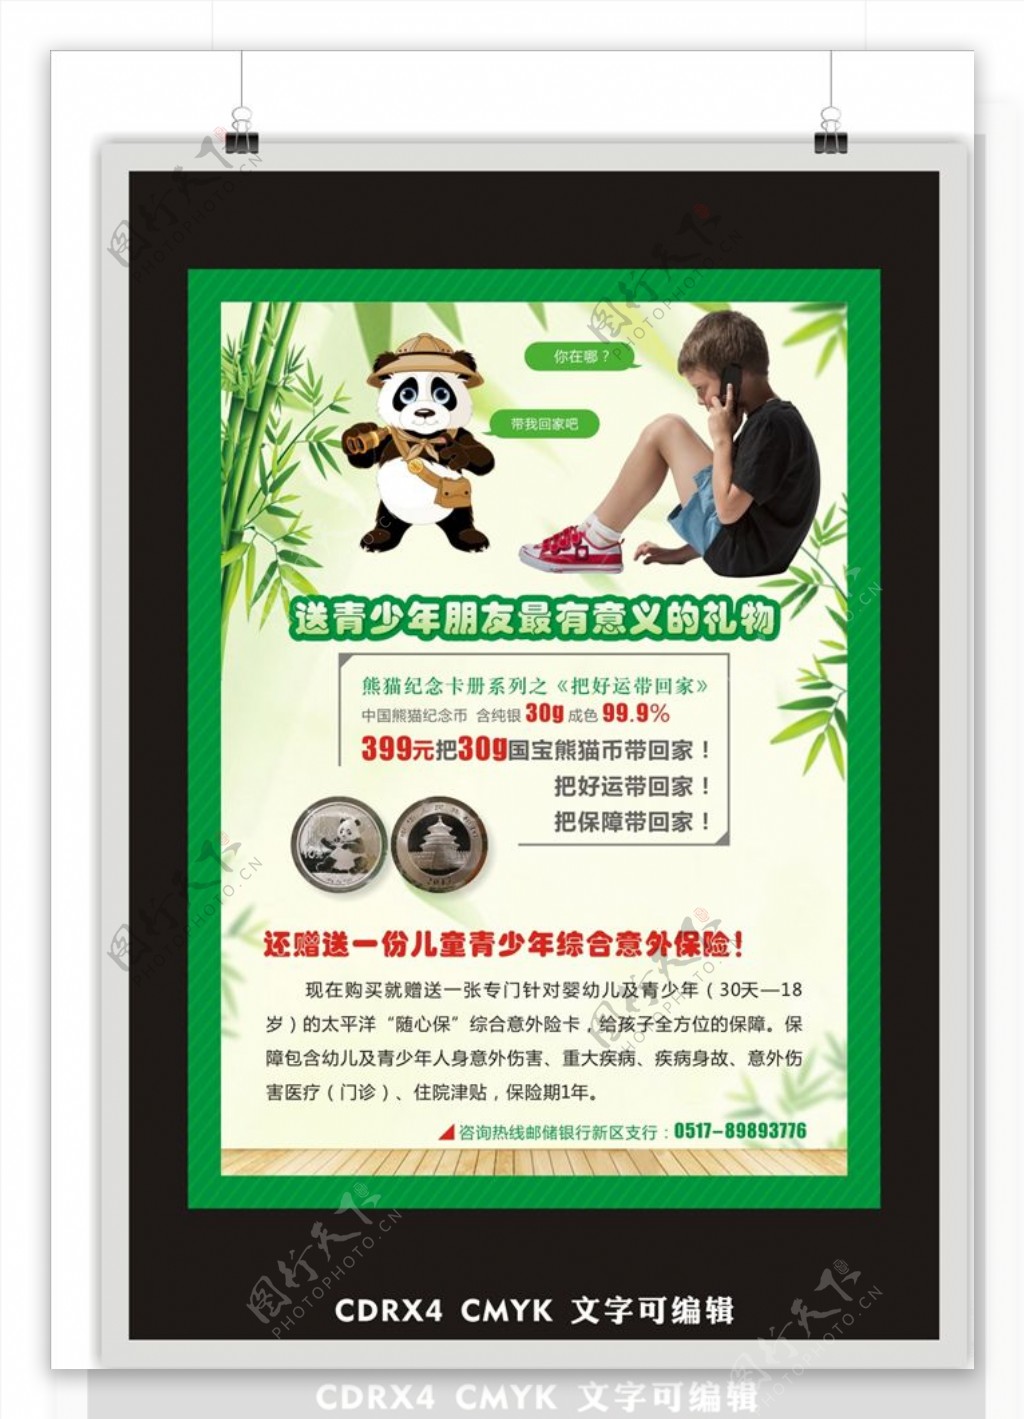 熊猫纪念币单页介绍